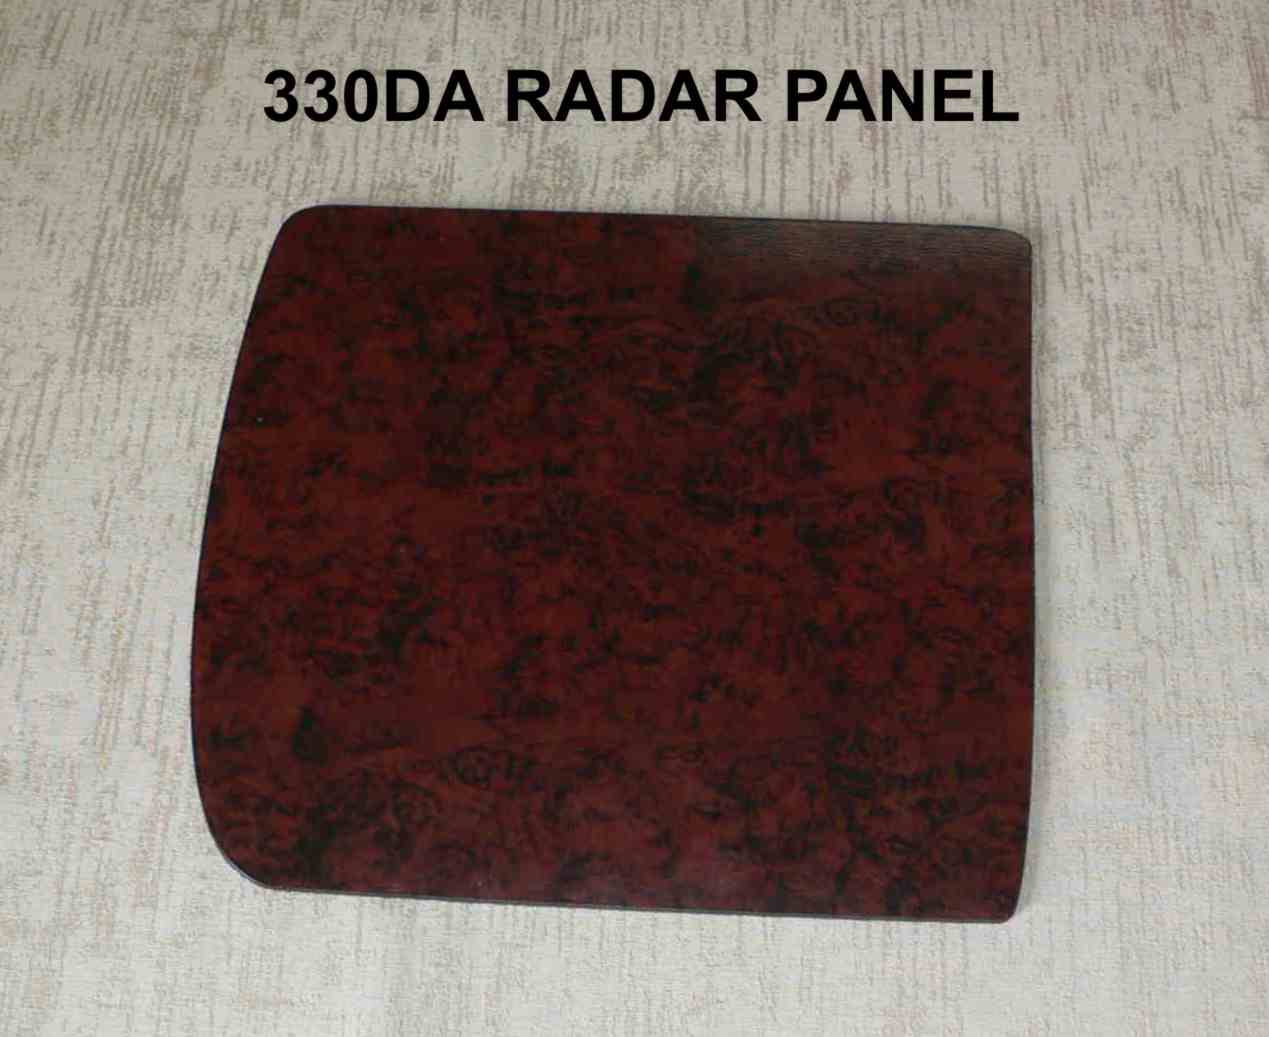 330 Sundancer Radar panel 1995-1999